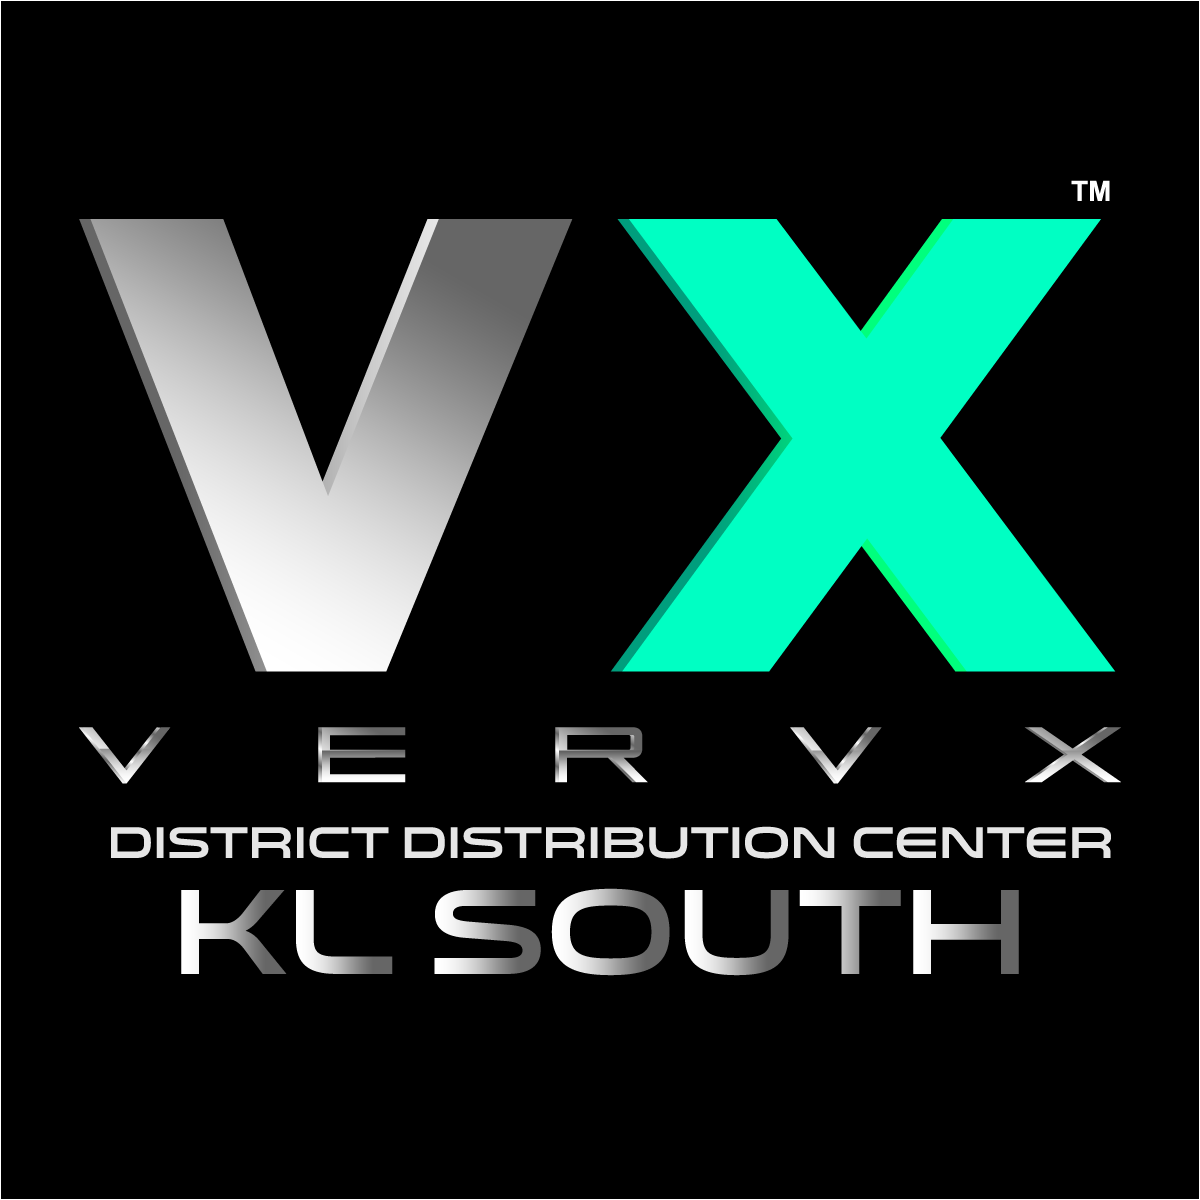 VX District Distribution Centre: KL South